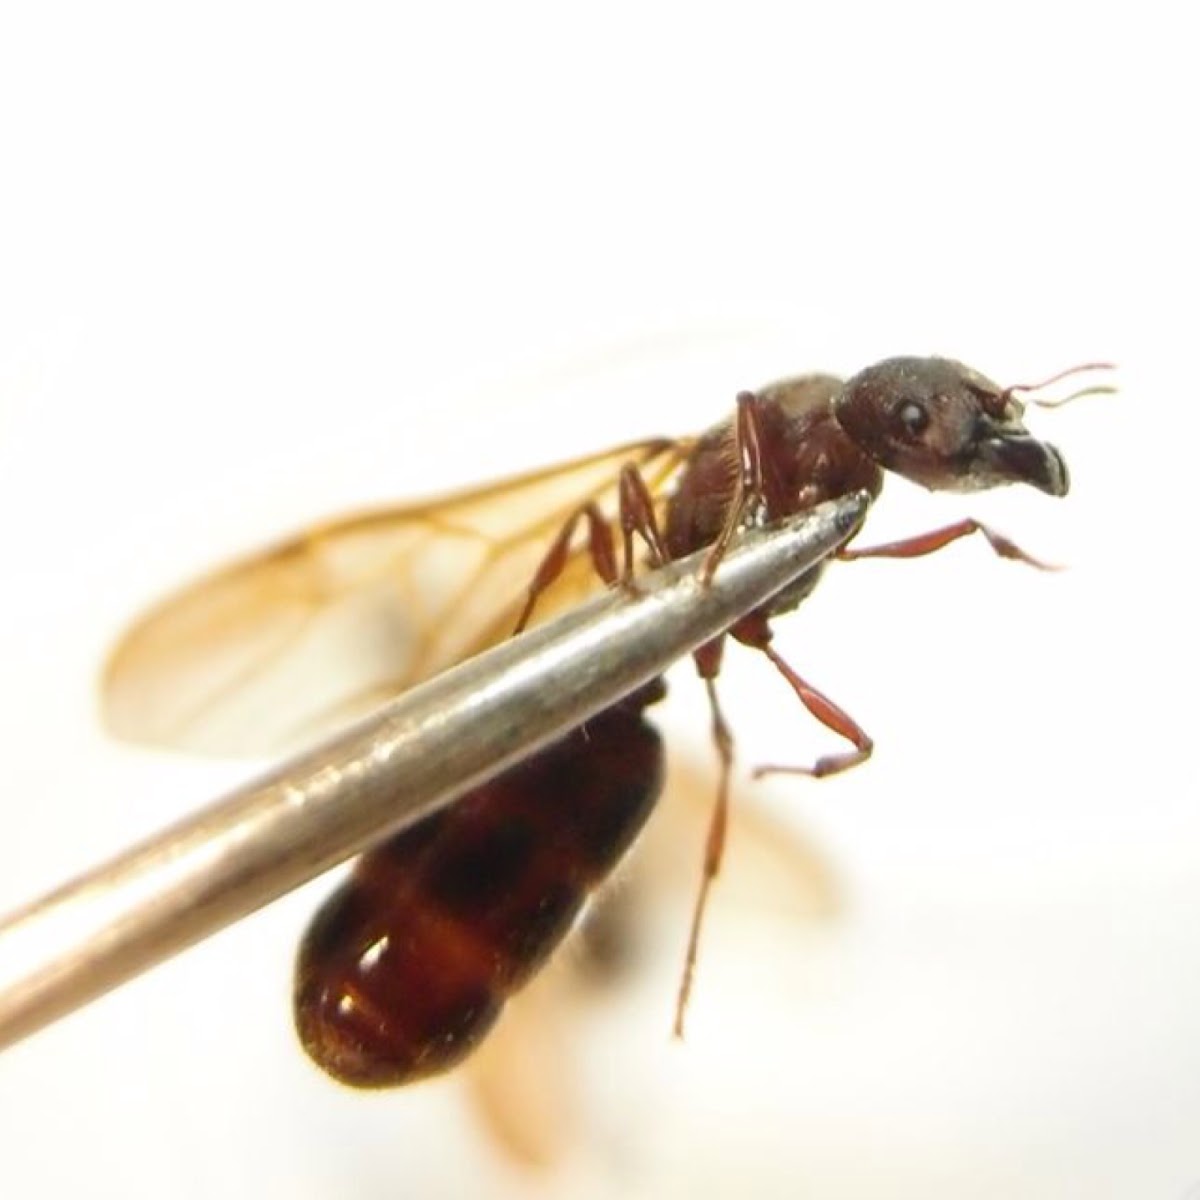 Camponotus Formosensis